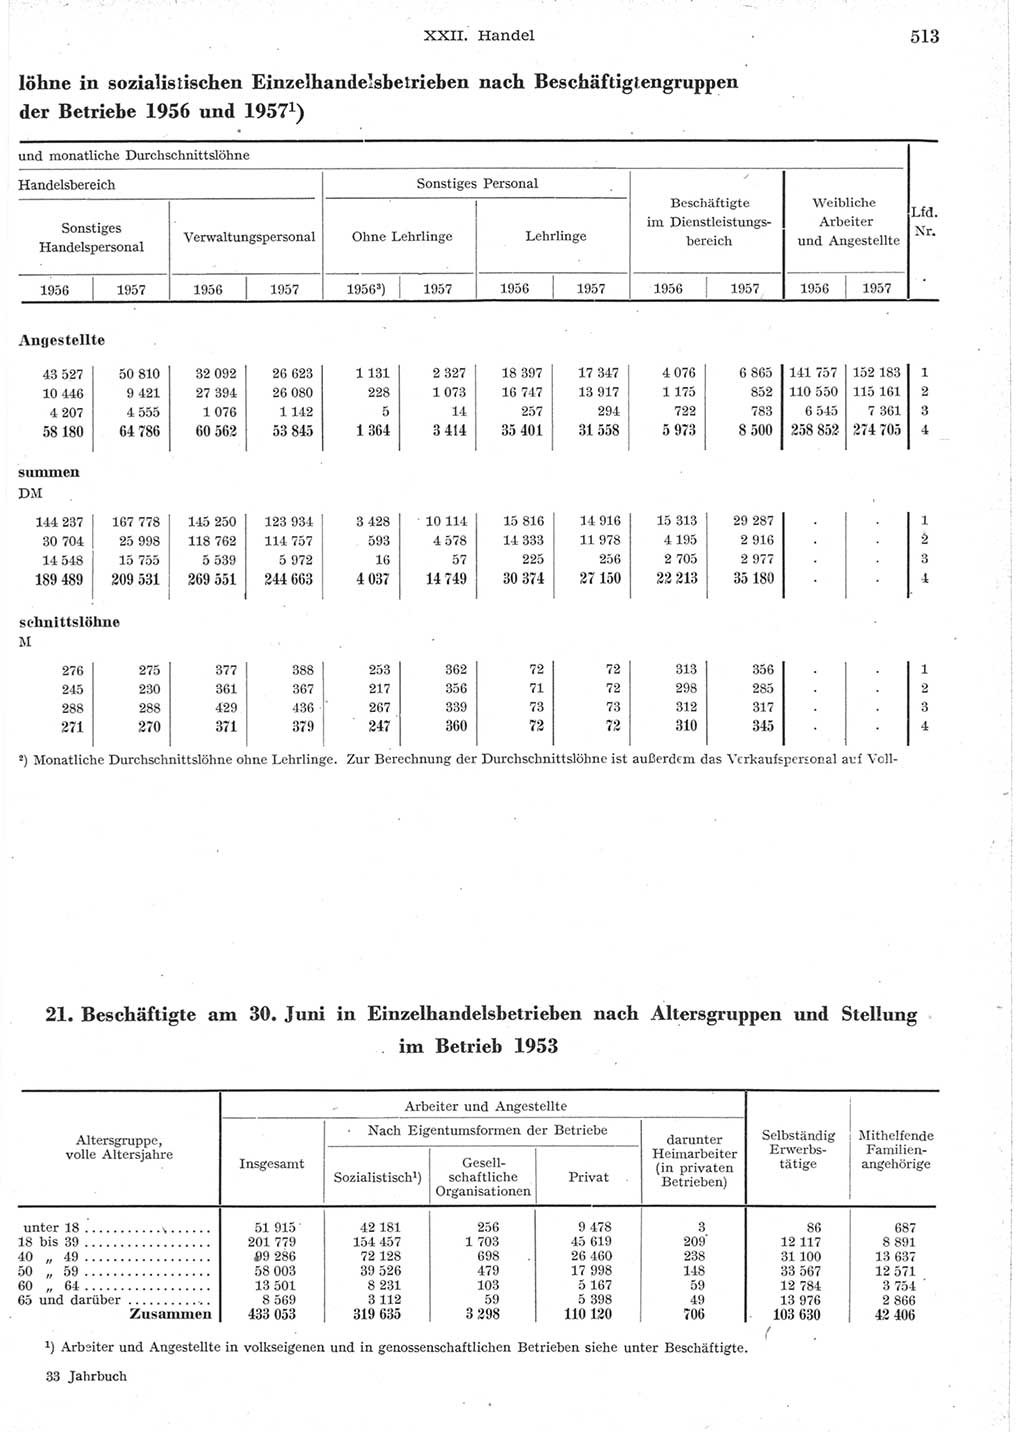 Statistisches Jahrbuch der Deutschen Demokratischen Republik (DDR) 1957, Seite 513 (Stat. Jb. DDR 1957, S. 513)